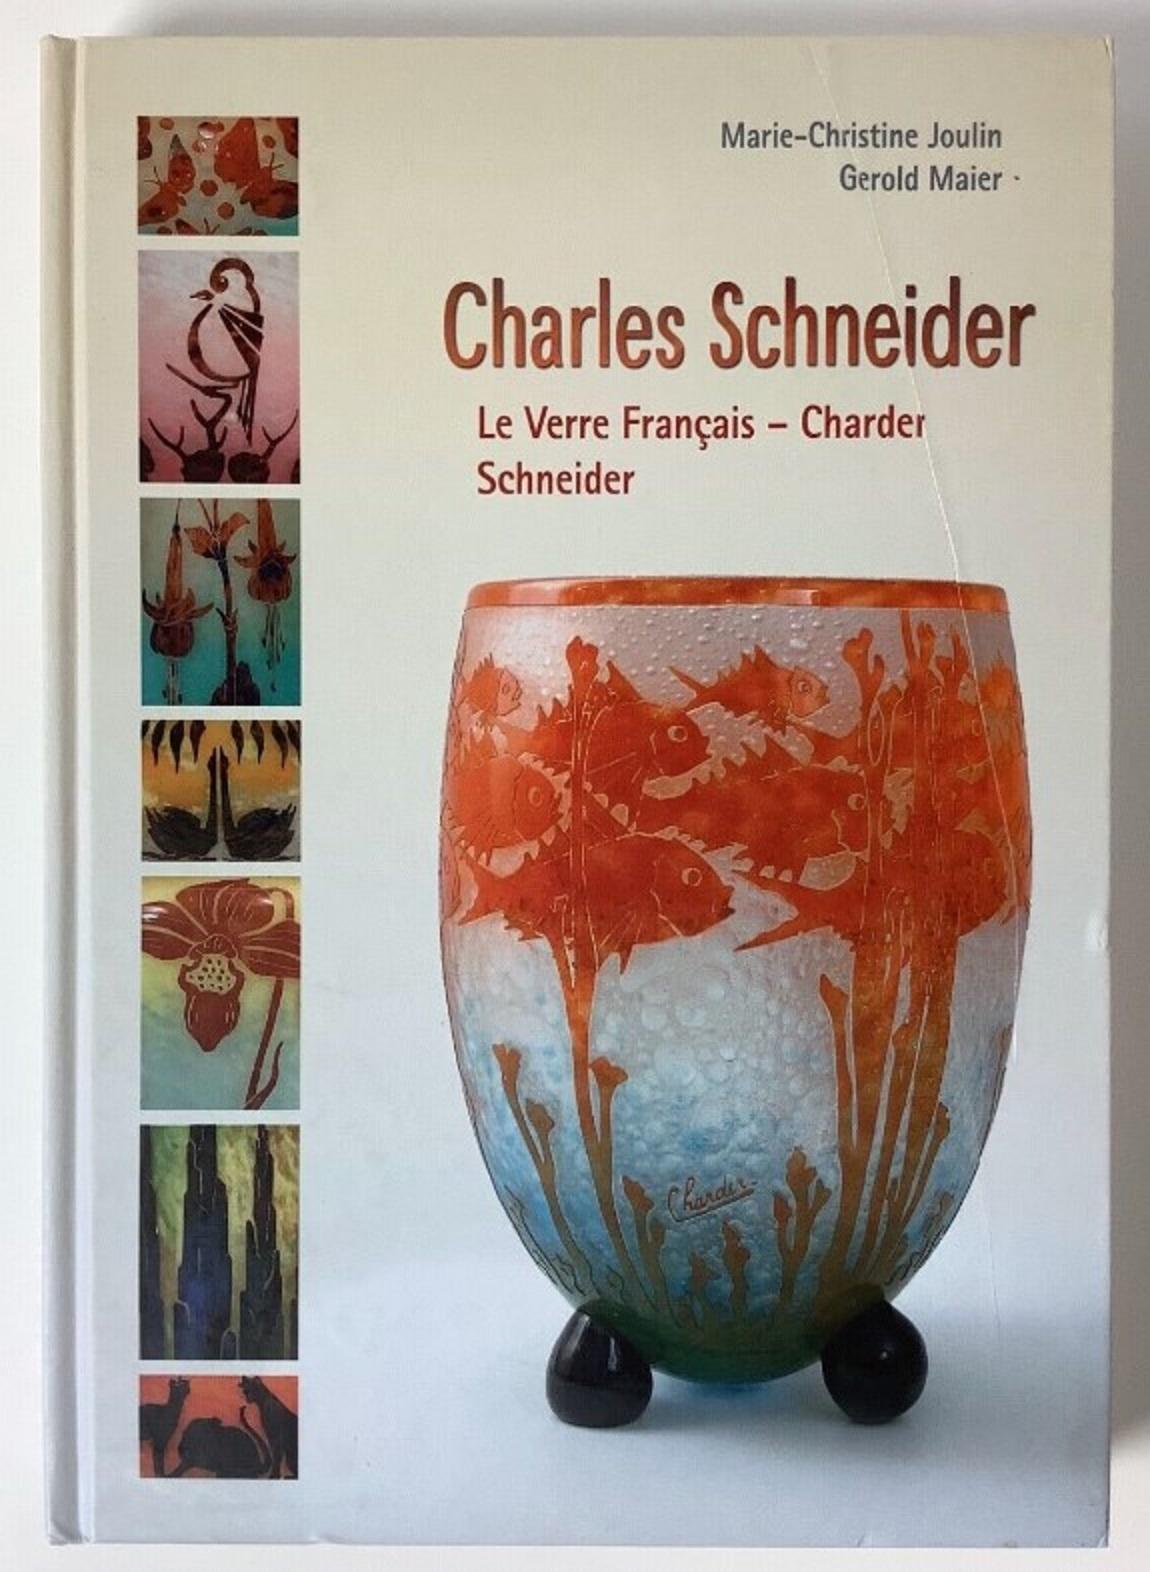 Vase Monumental Signe : Le Verre Francais ( Ombelles Flowers )
acide travaillé
Le verre à camée Le Verre était une ligne distincte de verre d'art conçue par Charles Schneider. Sa production s'est faite en même temps que celle des lunettes conçues